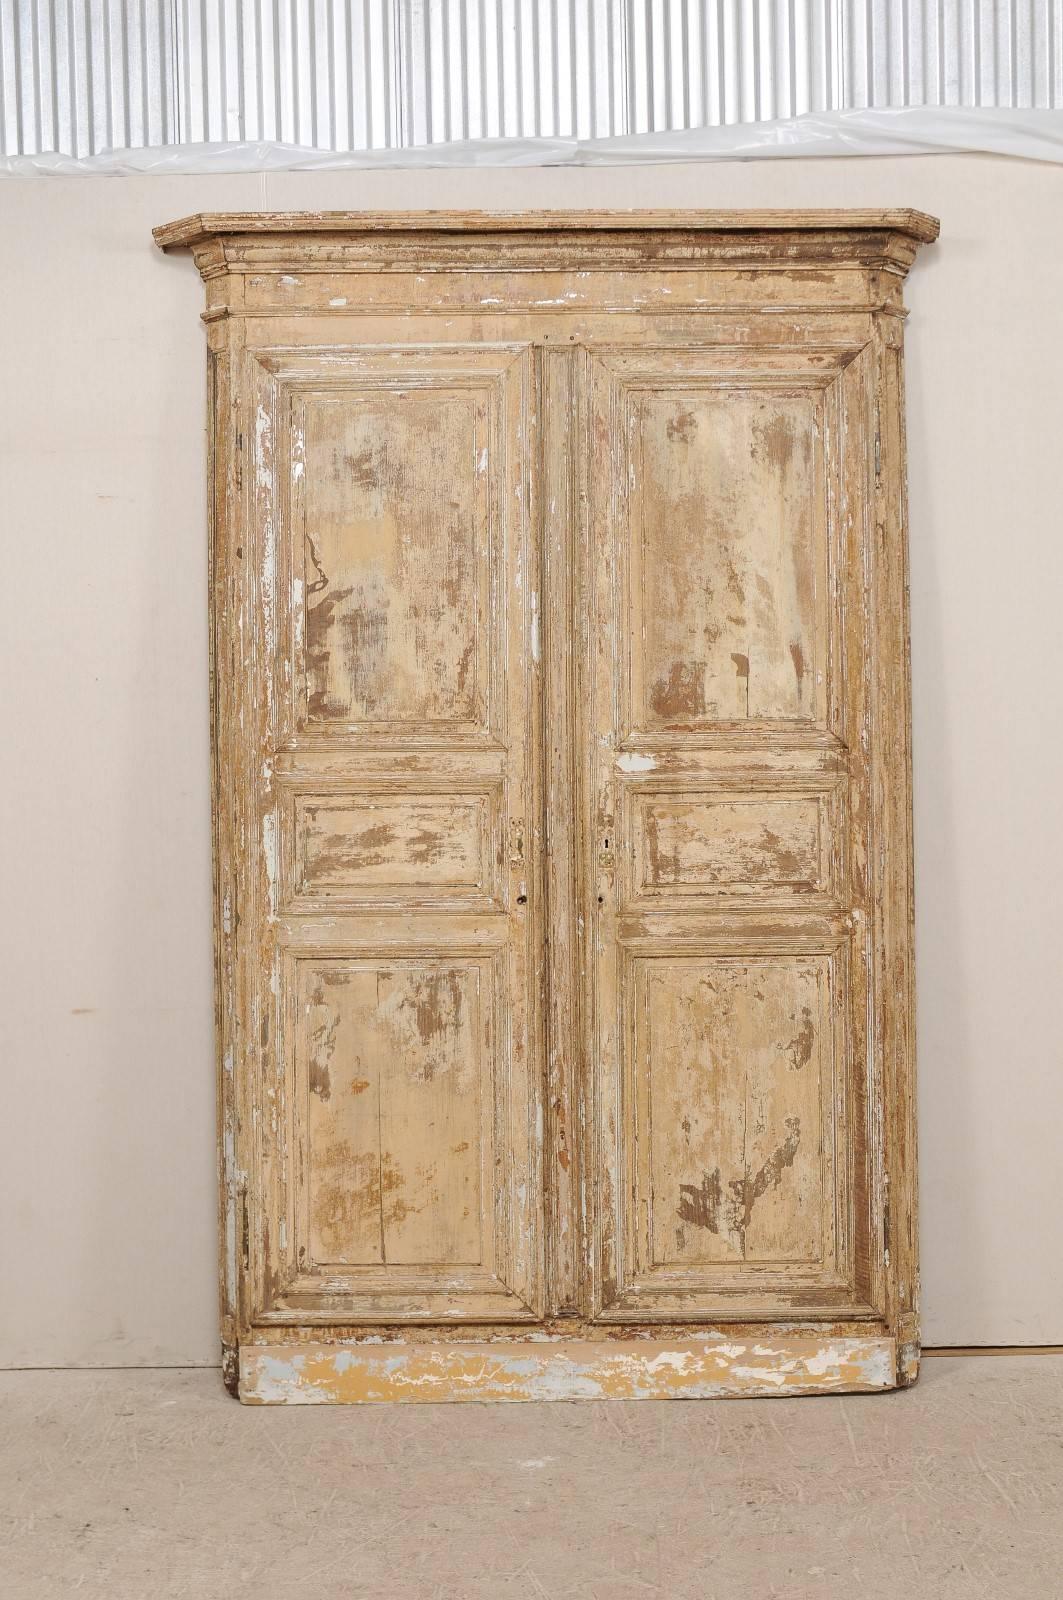 Ein Paar italienische Türen aus dem frühen 19. Jahrhundert in ihrem ursprünglichen geschnitzten Holzgehäuse. Dieses fabelhafte Stück besteht aus zwei antiken italienischen Türen mit ihrer Originalverkleidung. Die Einfassung oder das Gehäuse hat